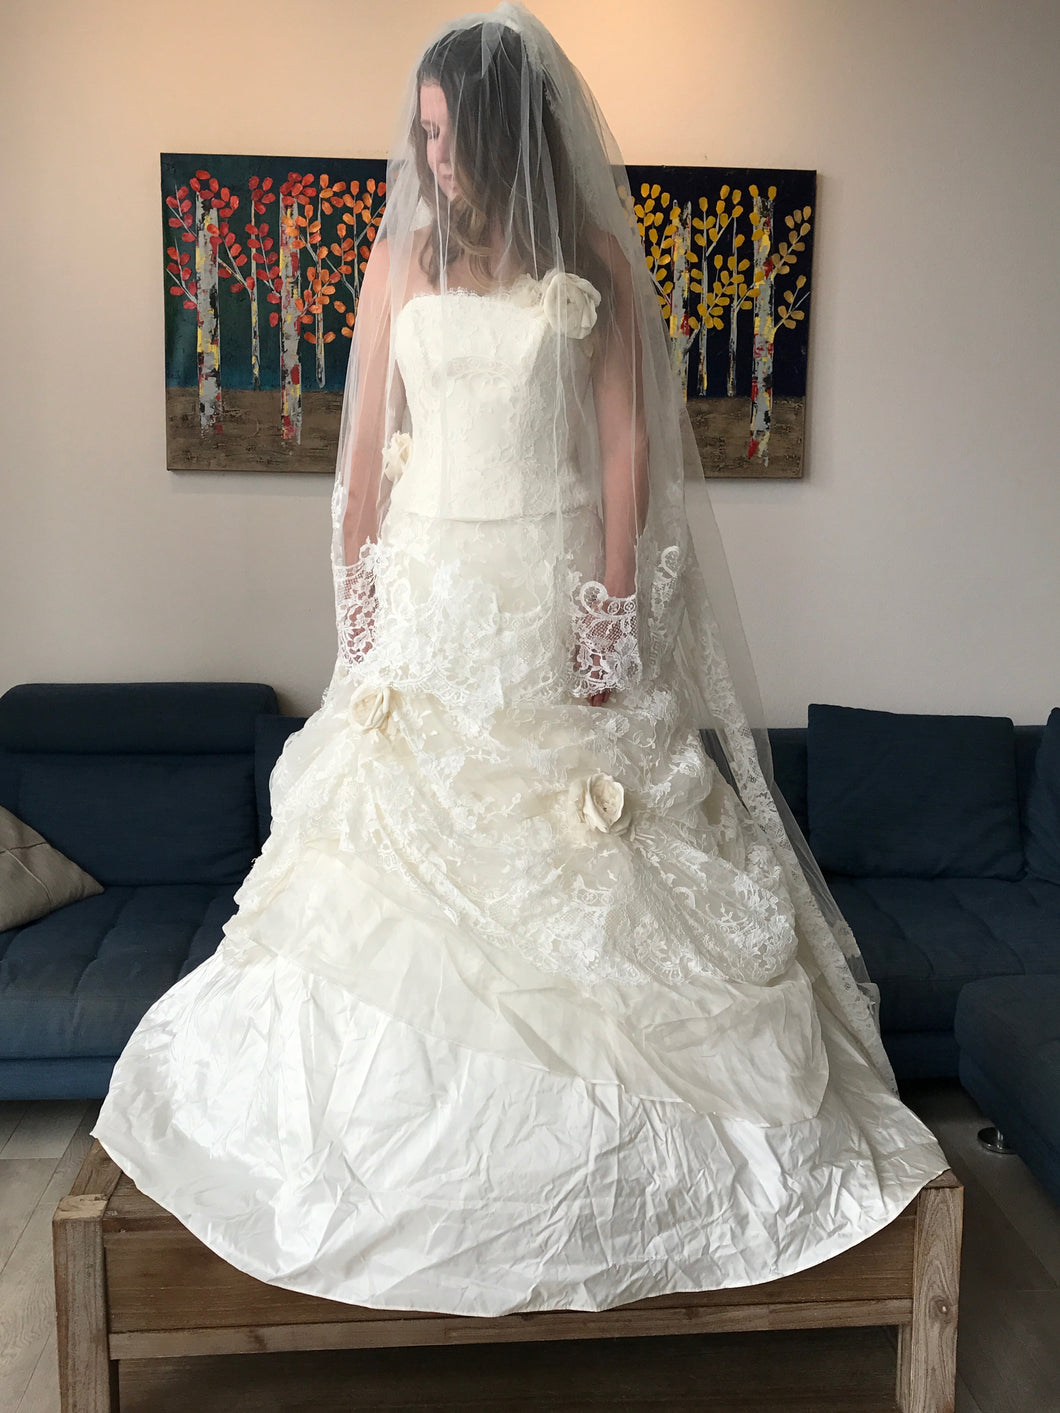 Atelier Aimee 'Alta Moda Saposa' size 0 new wedding dress front view on bride